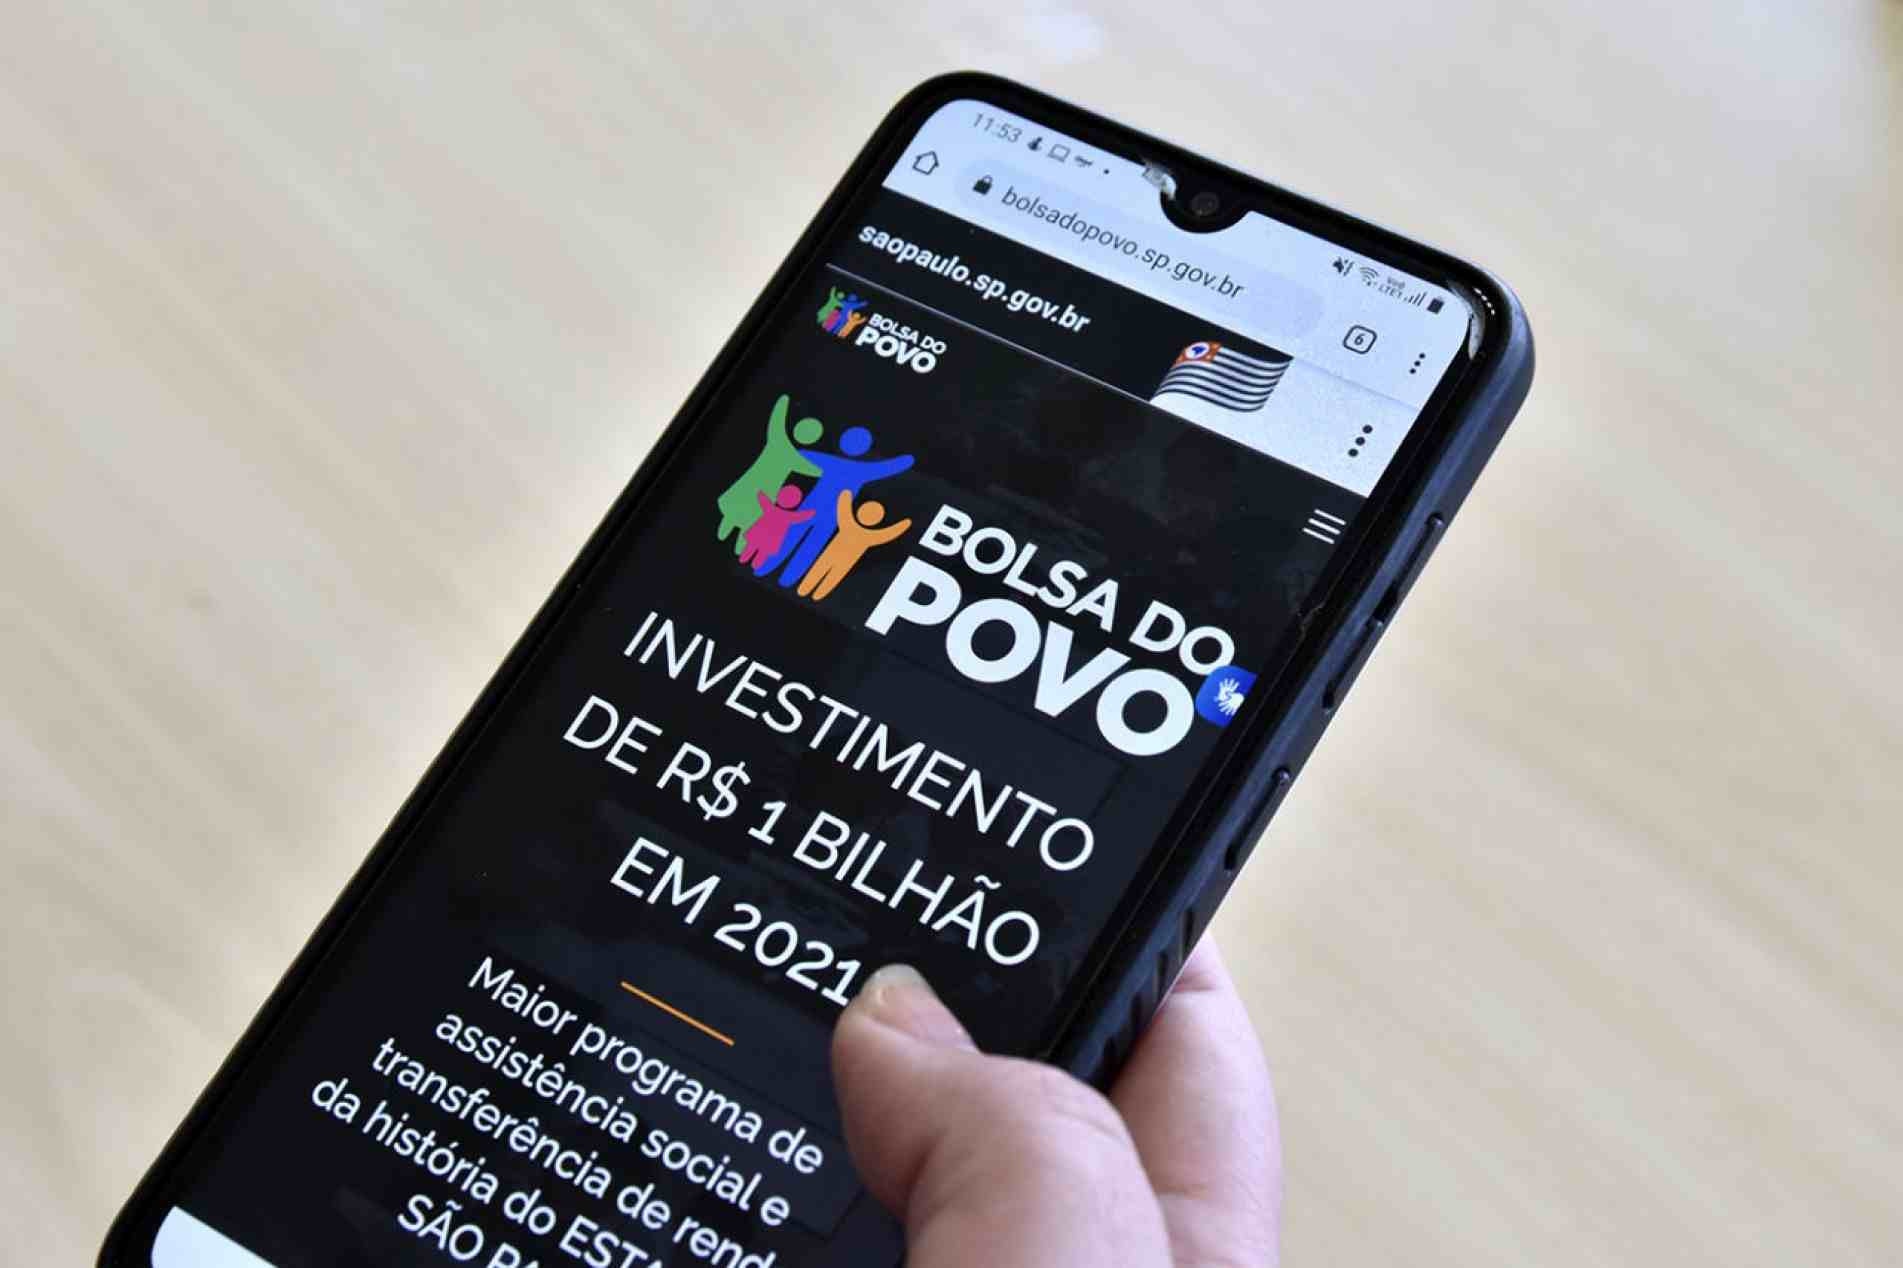 Bolsa Empreendedor abre inscrições para desempregados e MEI com auxílio de R$ 1 mil